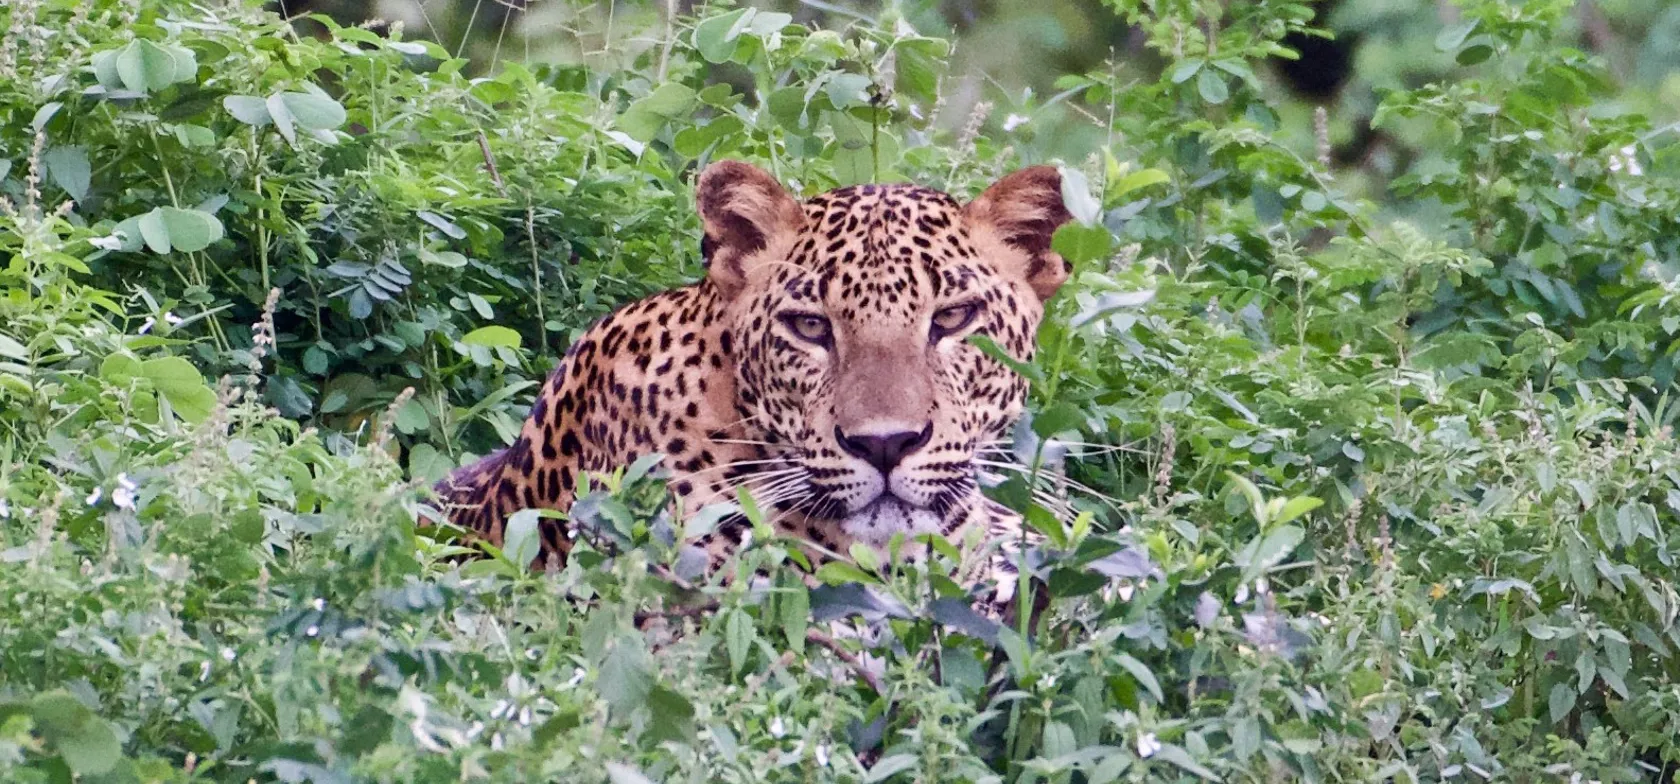 Den sjældne leopard i Yala nationalpark i Sri Lanka. Foto Flemming Lauritsen